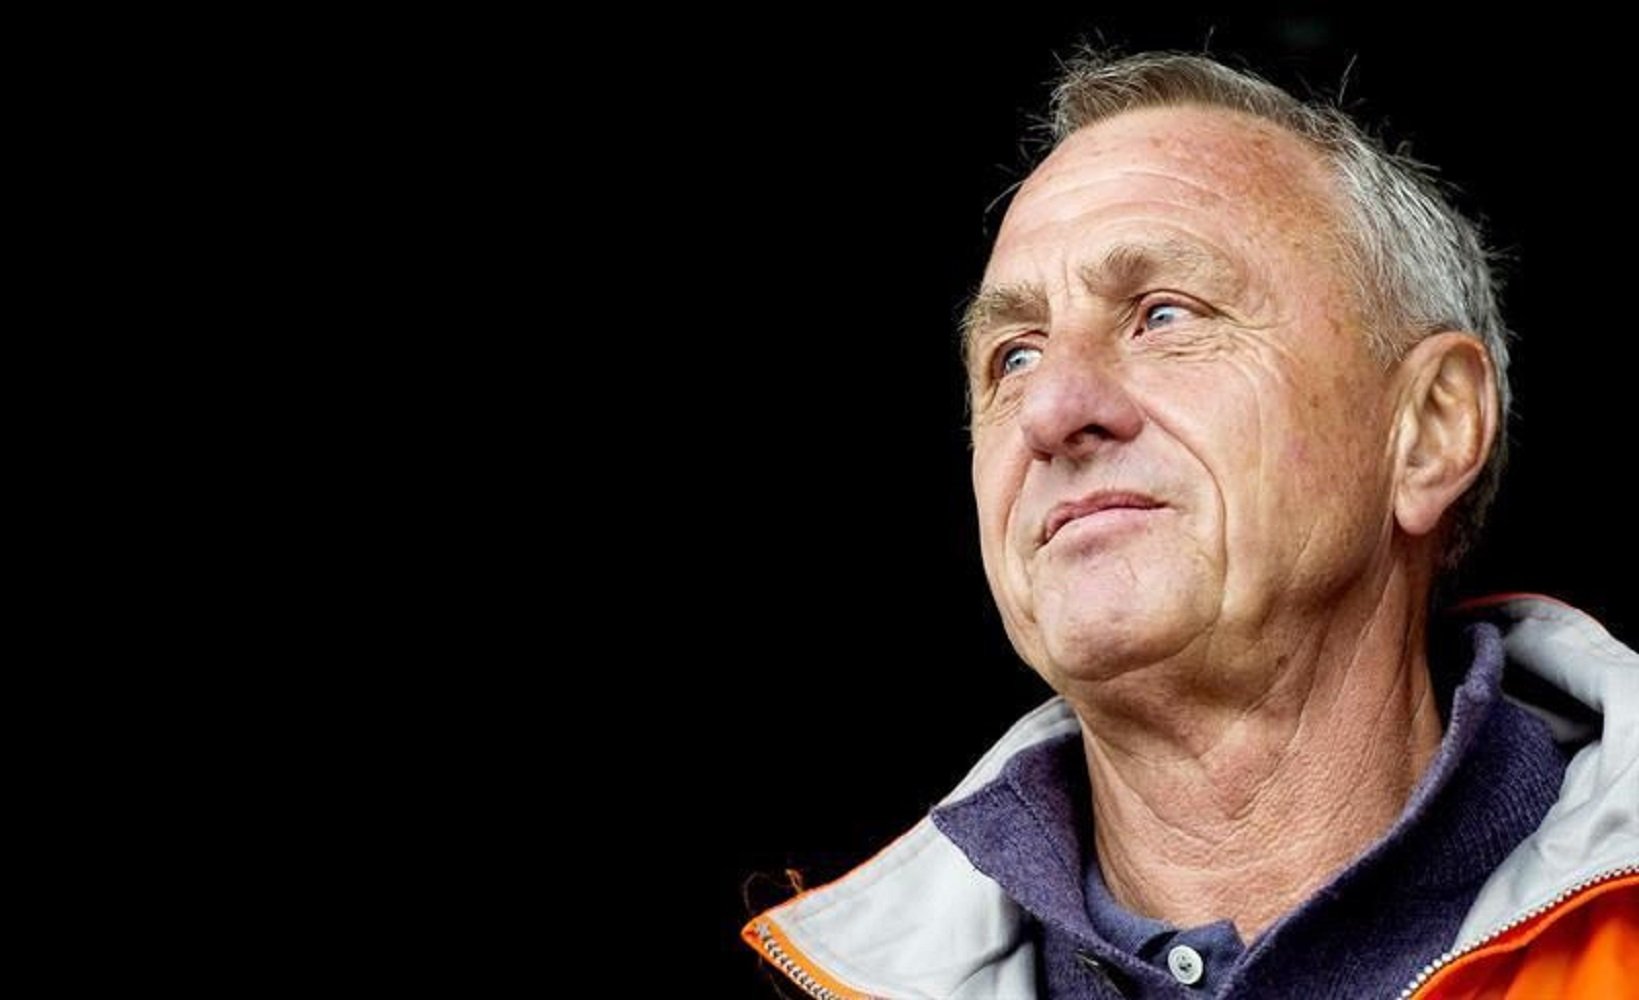 Johan Cruyff ja opinava sobre el VAR l'any 2002